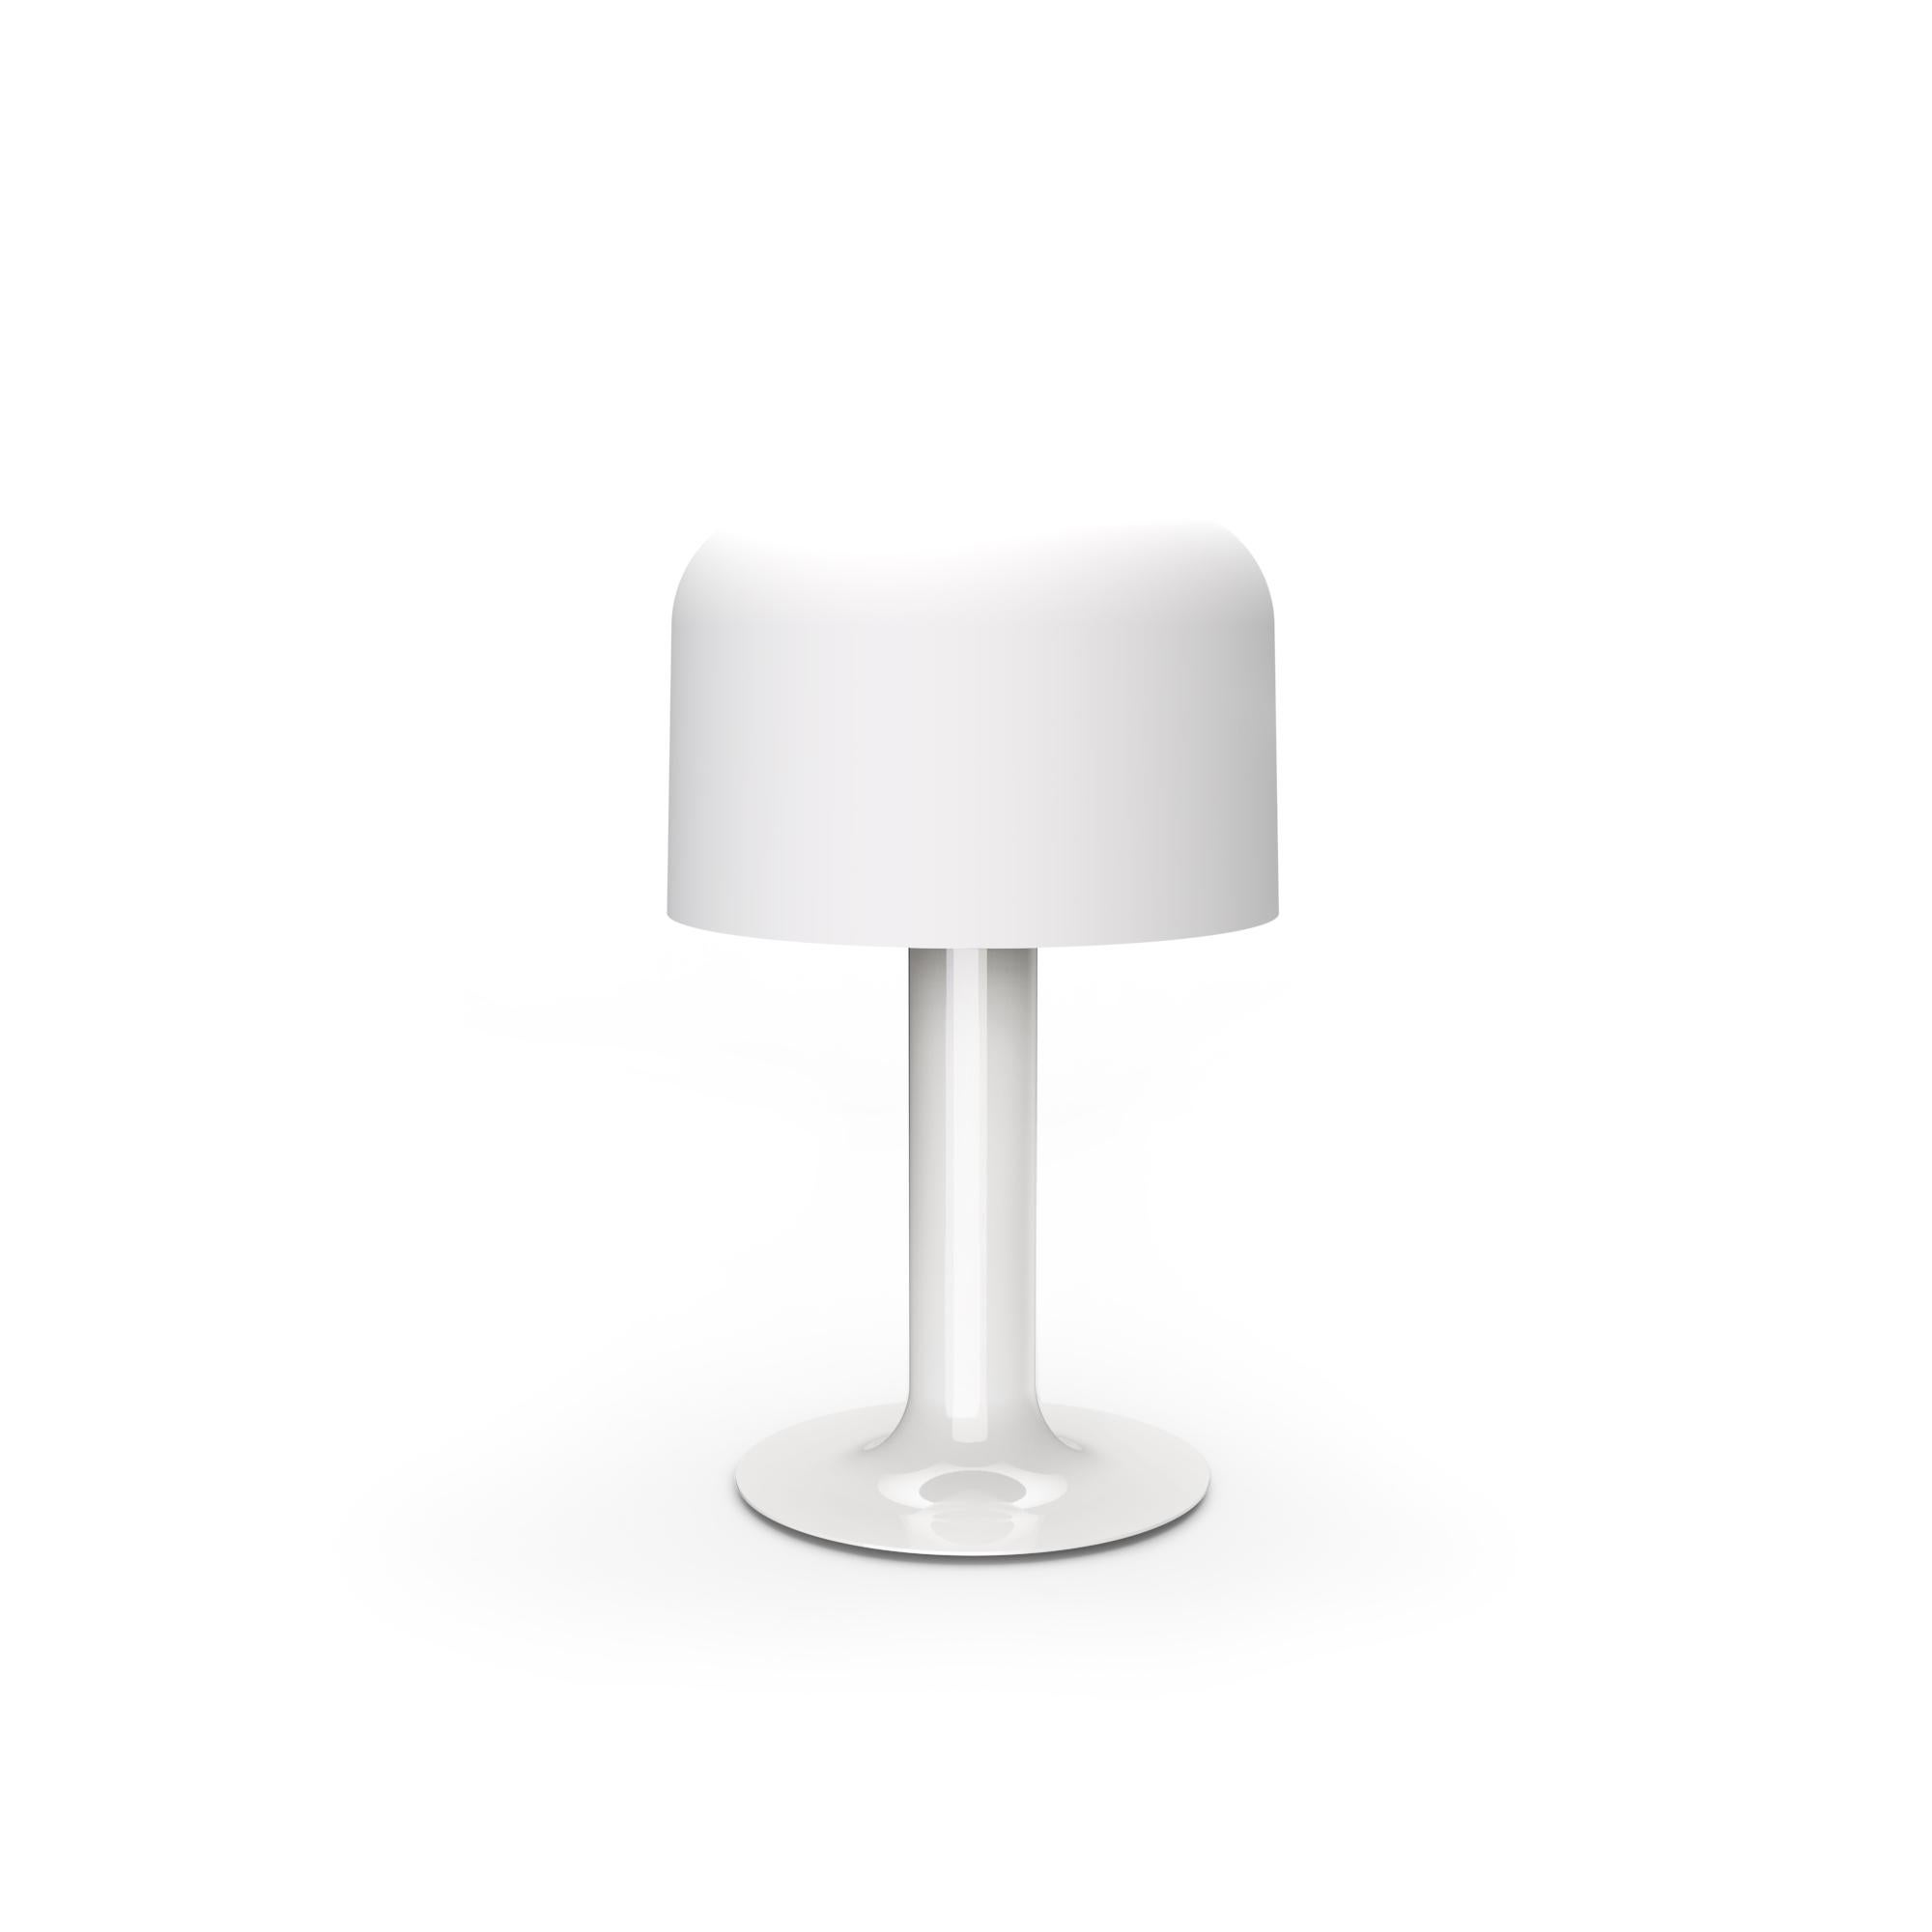 Lampe de table en métal et verre 10497 de Michel Mortier pour Disderot en blanc.

Conçue à l'origine en 1972, cette lampe de table sculpturale est une nouvelle édition numérotée produite avec un certificat d'authentification. Fabriqué en France par